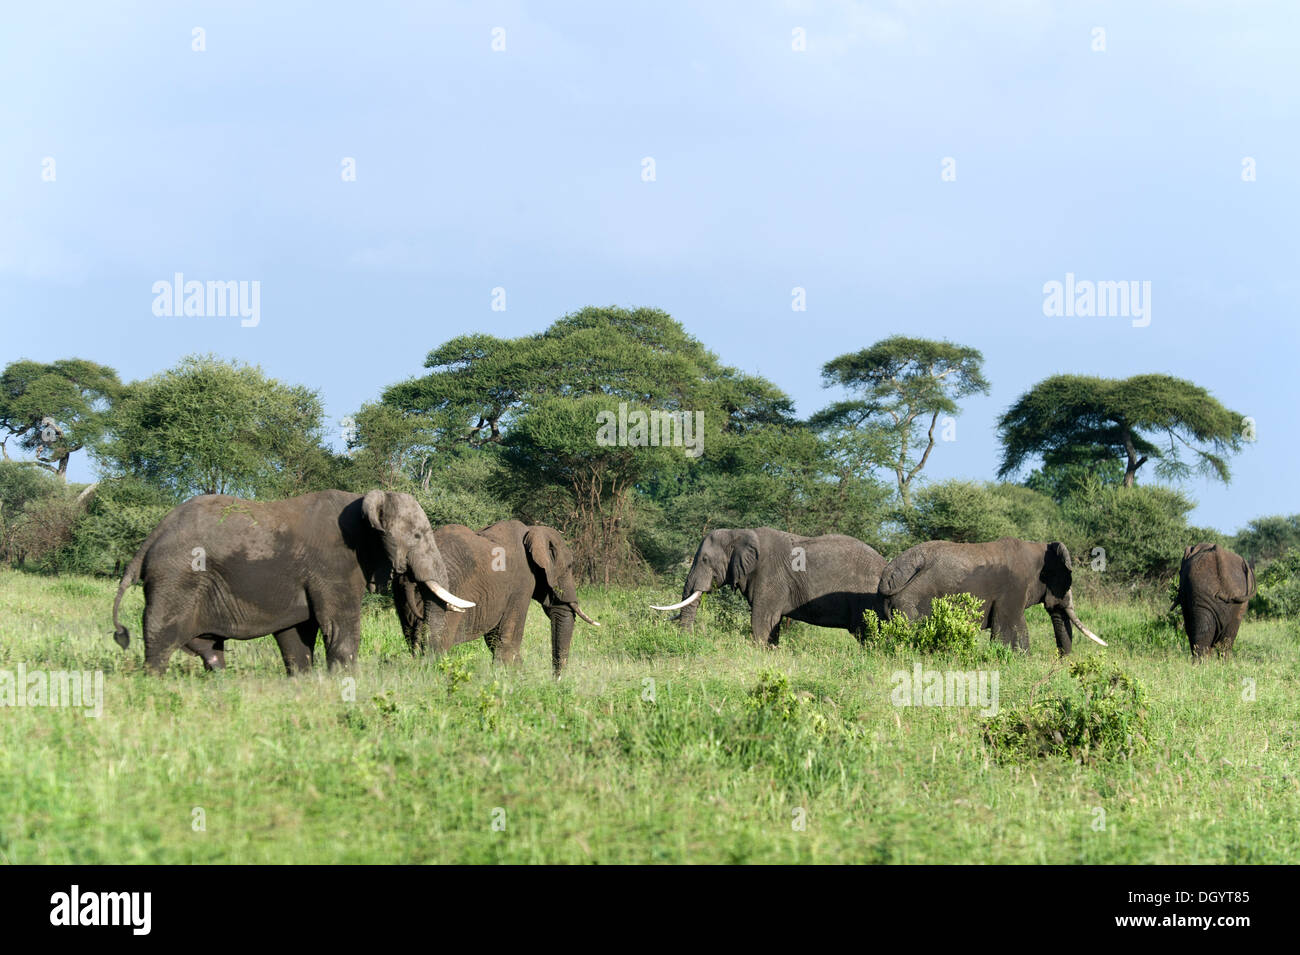 Les taureaux de l'eléphant d'Afrique (Loxodonta africana) dans le parc national de Tarangire, Tanzanie Banque D'Images